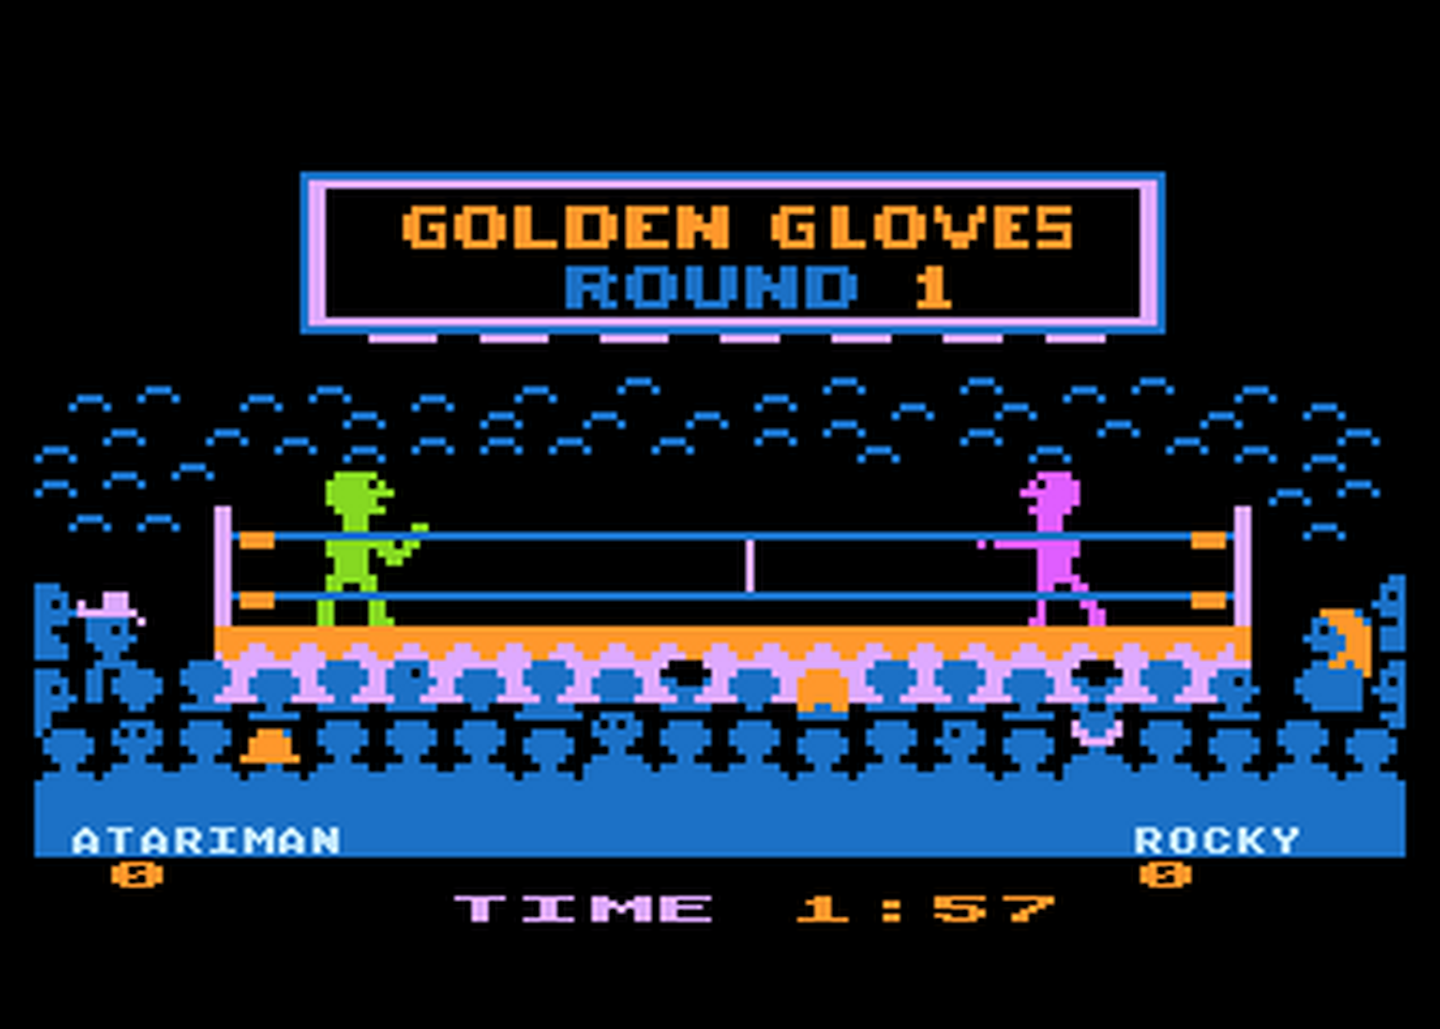 Atari GameBase Golden_Gloves Artworx 1982